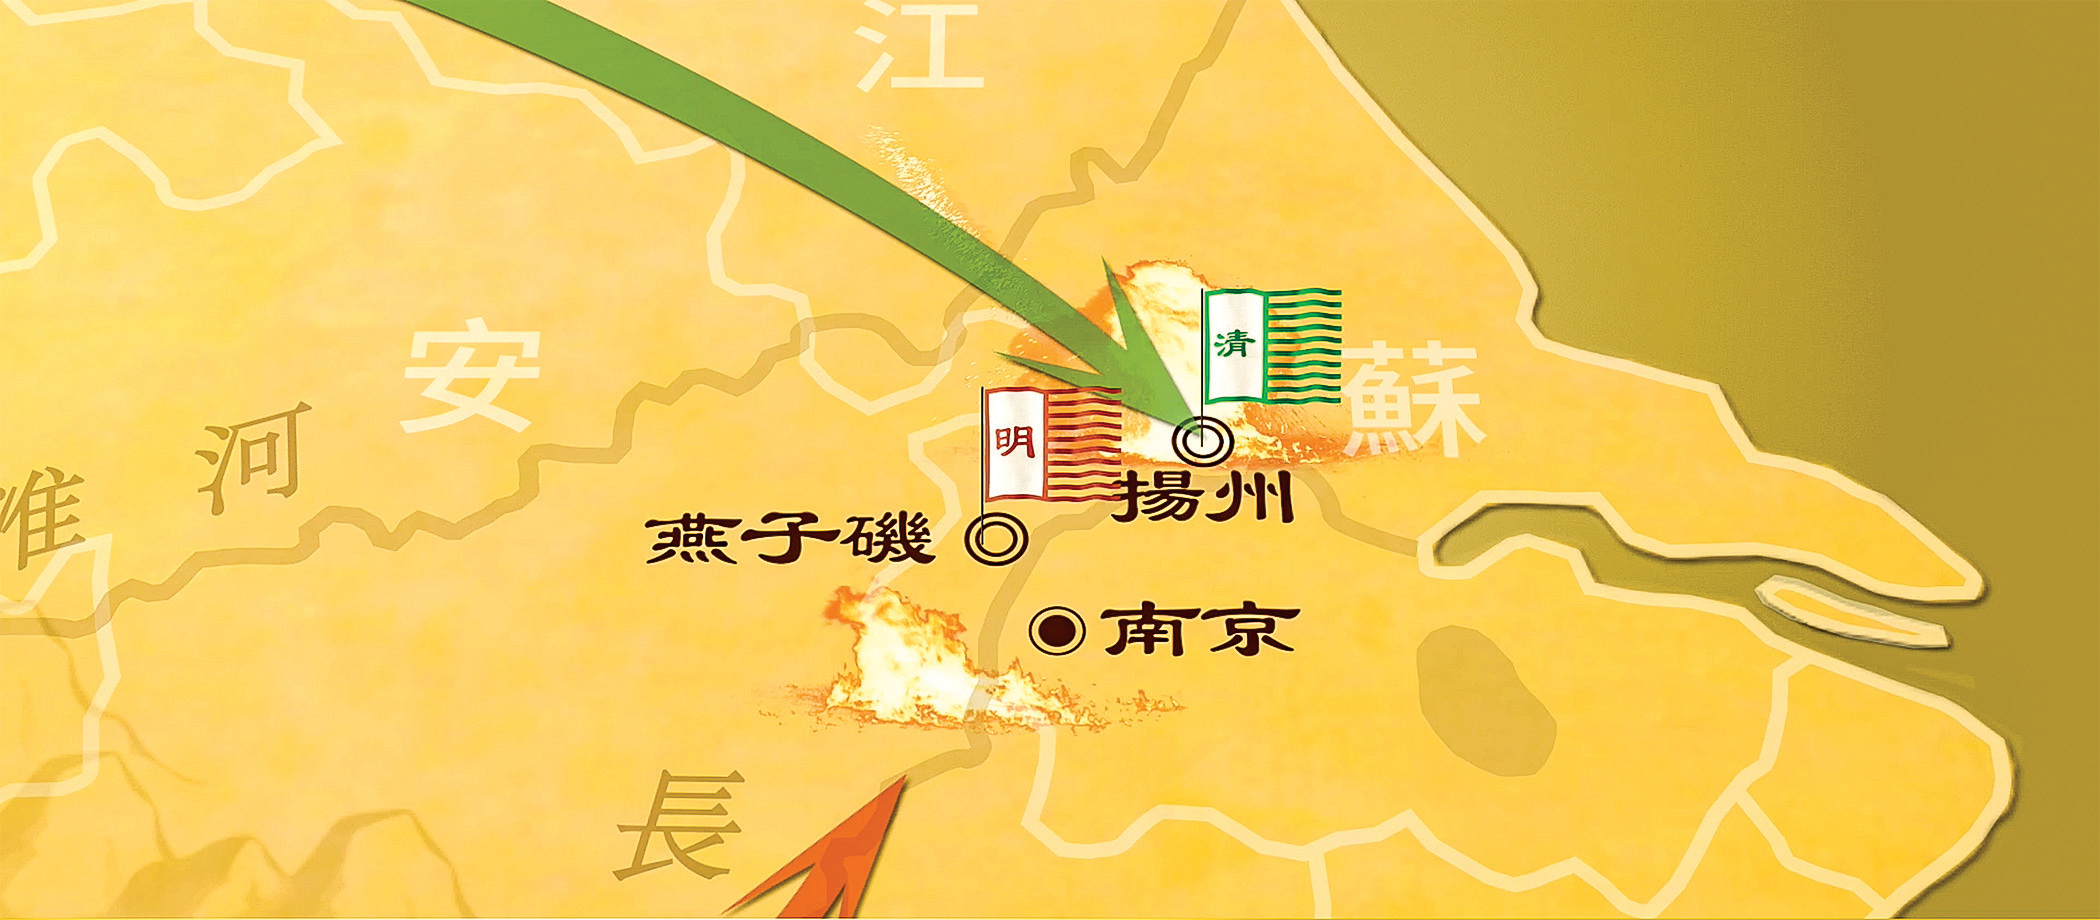 大清軍隊趁江北明軍被調離之際，很快攻陷了揚州。